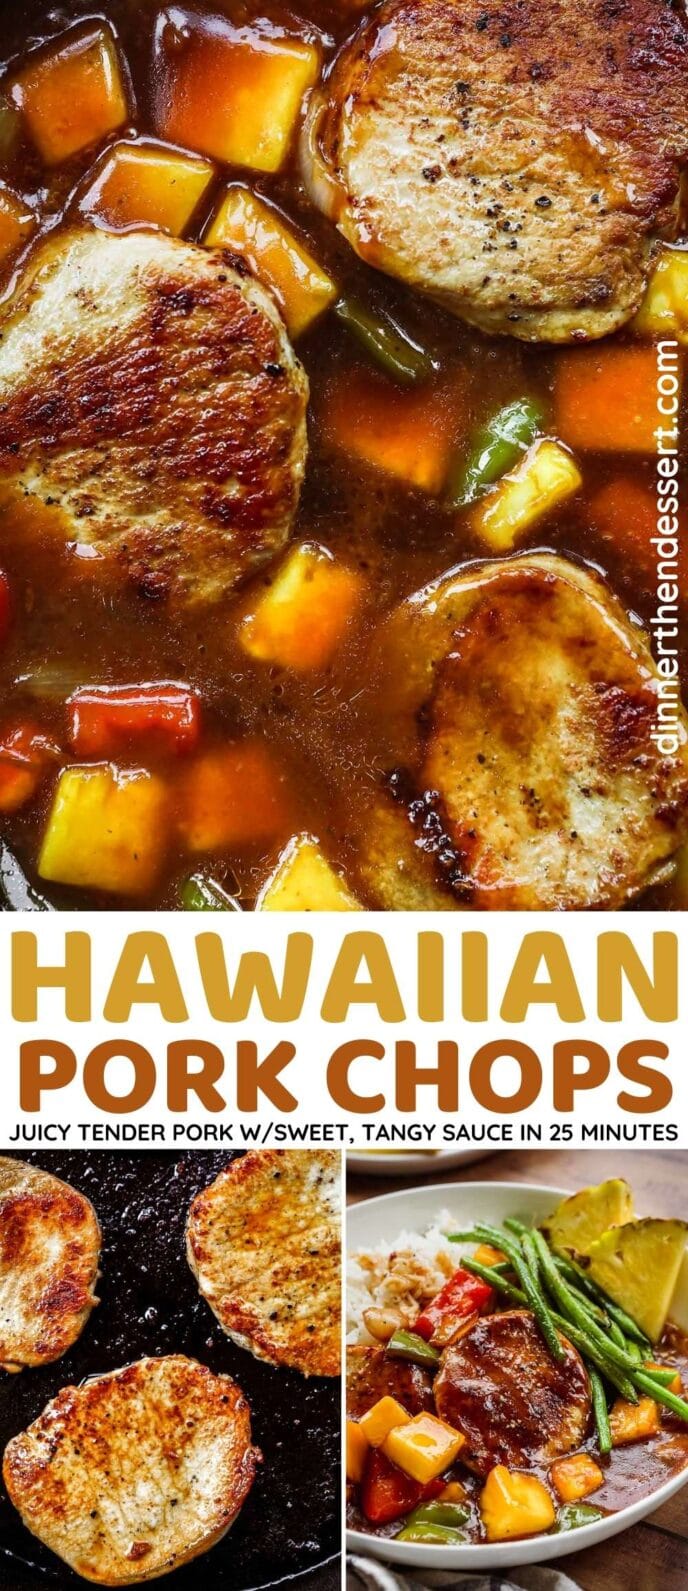 Hawaiian Pork Chops collage